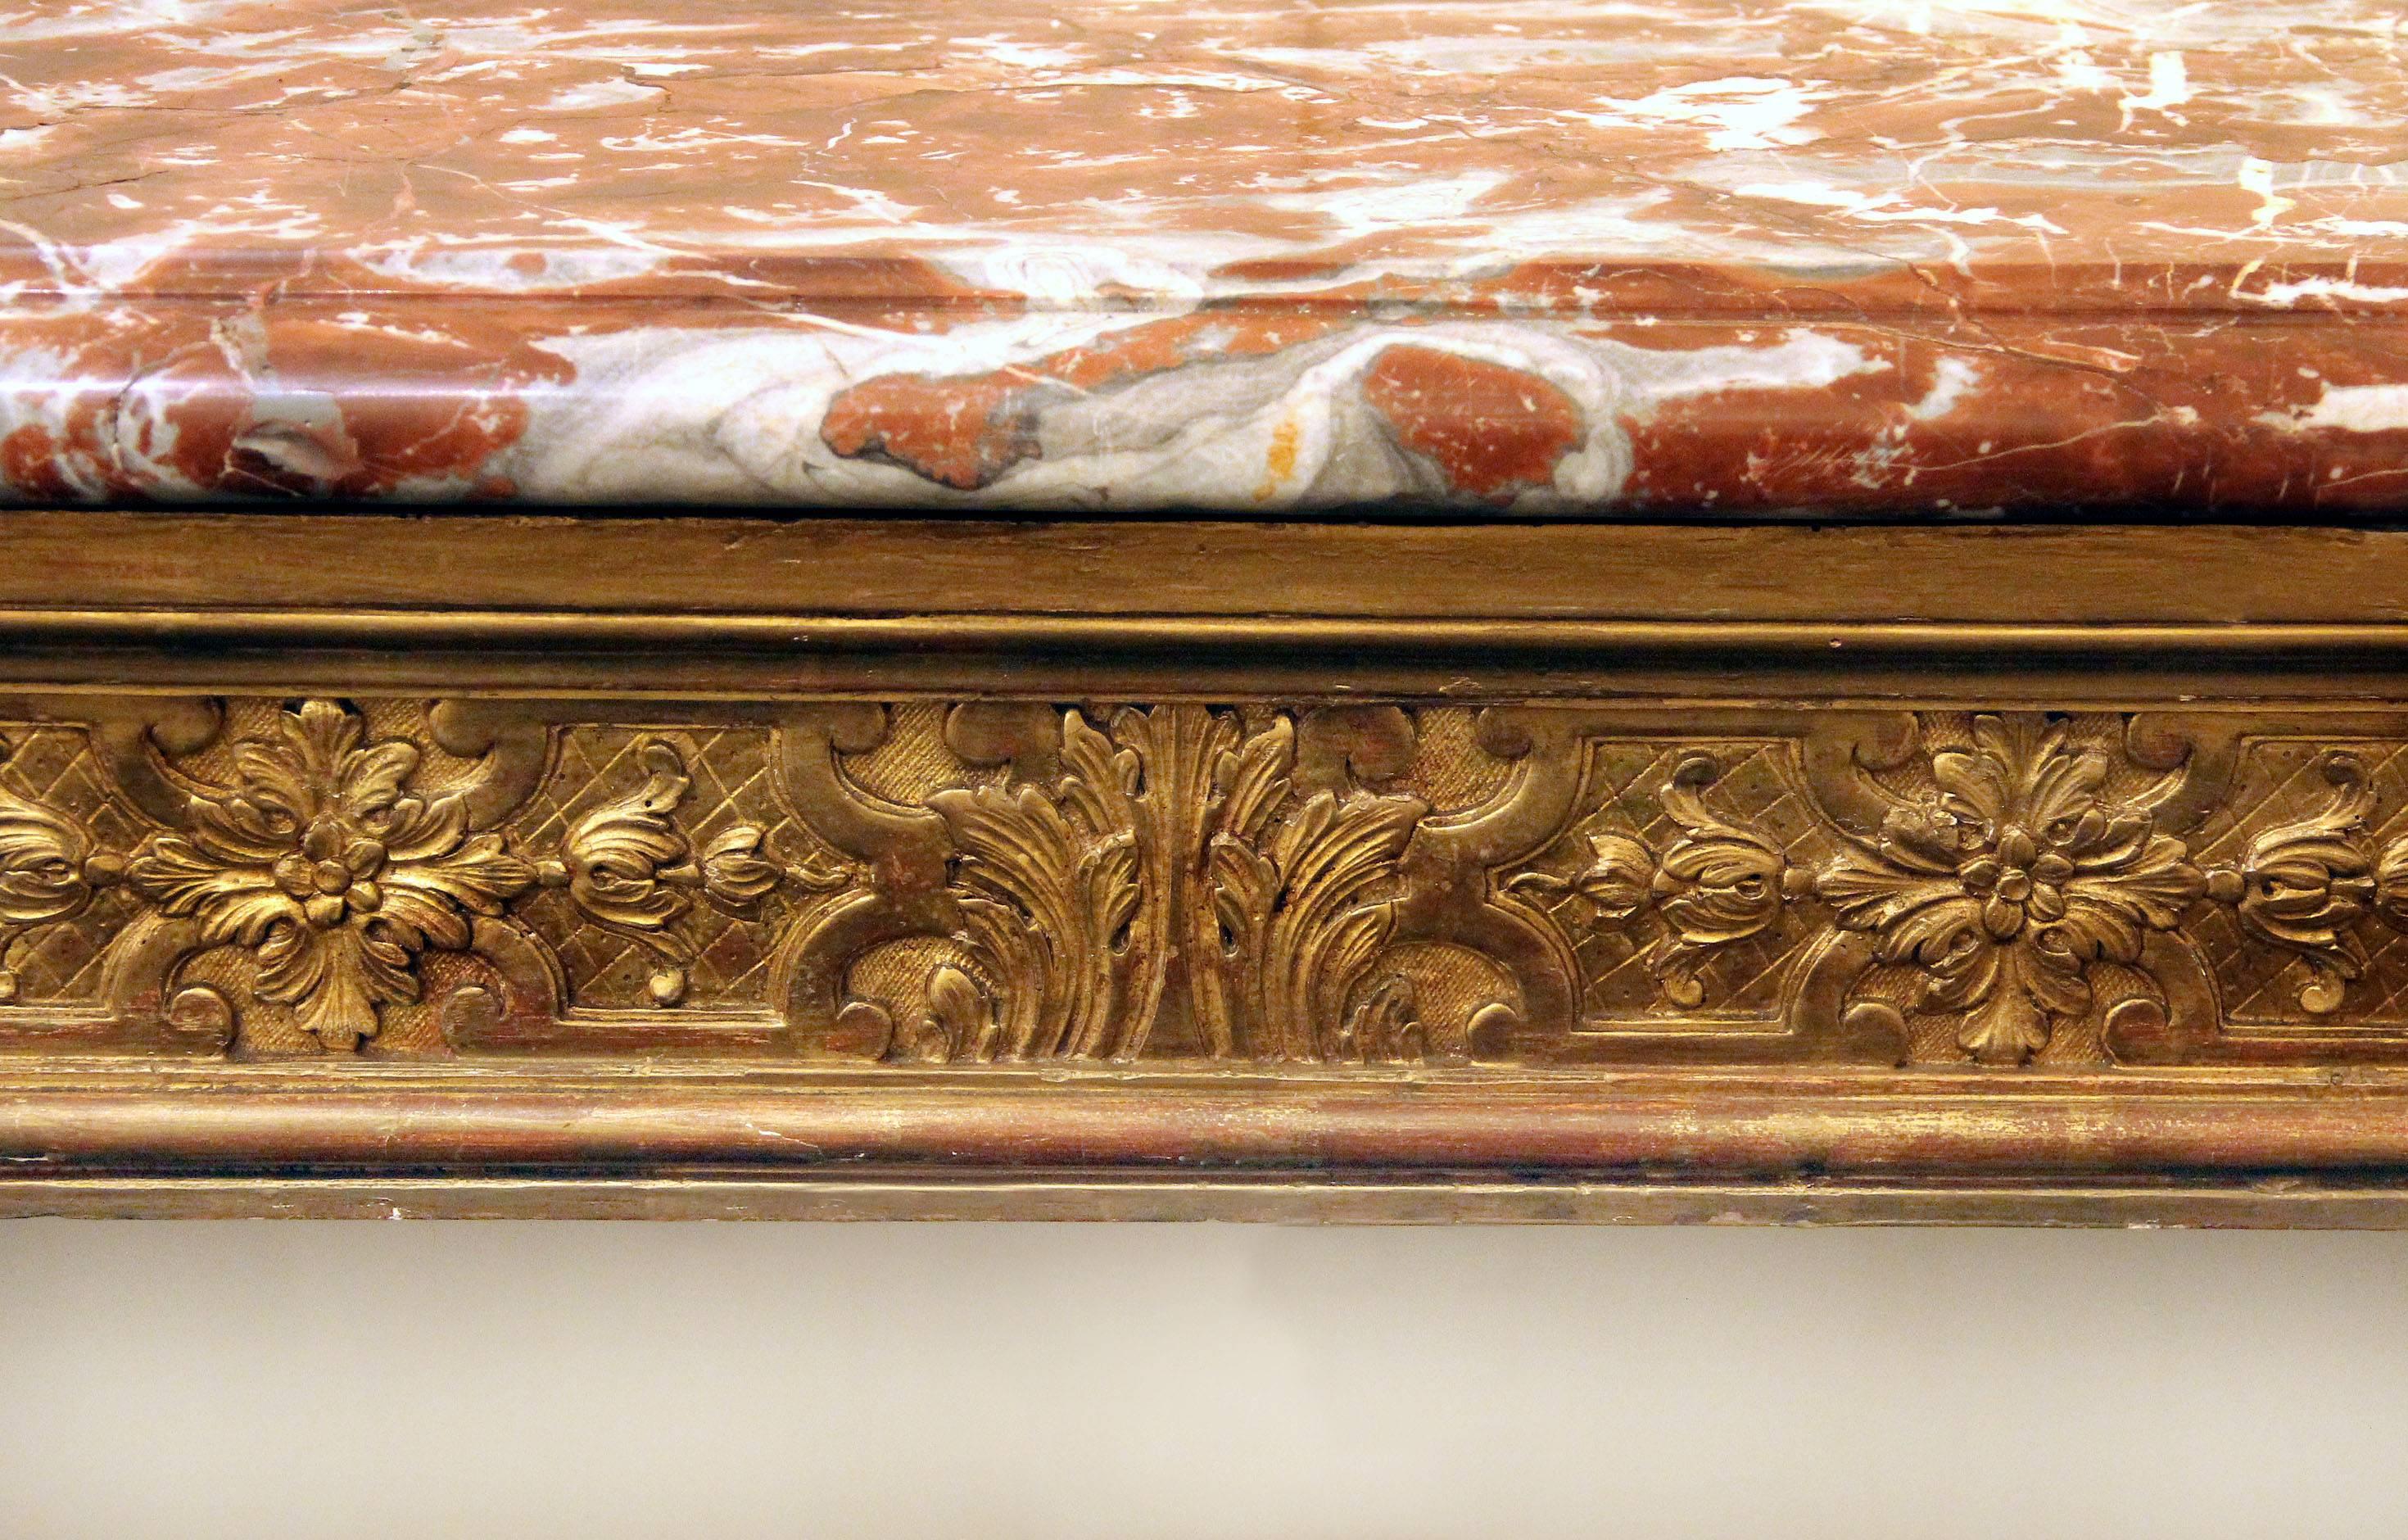 Eine sehr fein geschnitzte achtbeinige Konsole aus Goldholz aus dem späten 19. Jahrhundert

Eine lange rougefarbene Marmorplatte sitzt auf acht geschnitzten Beinen:: die von einer Bahre zentriert werden. Jedes Stück ist handgeschnitzt und mit Blumen